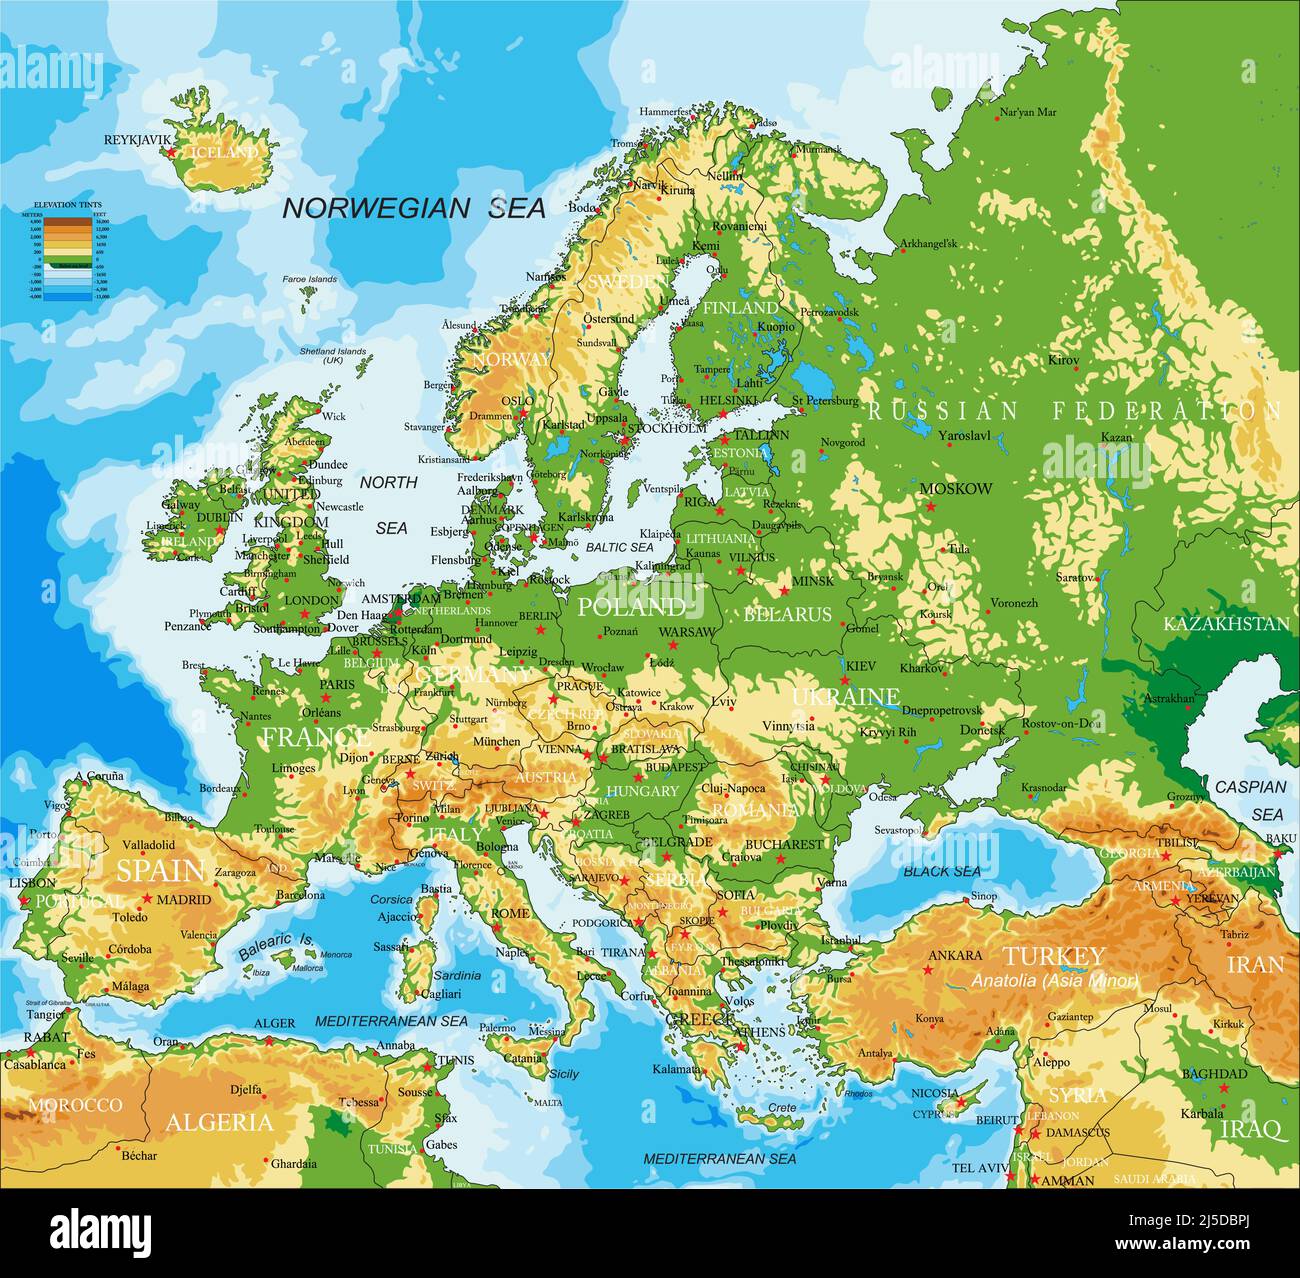 Sehr detaillierte physische Karte von Europa, im Vektorformat, mit allen Reliefformen, Ländern und großen Städten. Stock Vektor